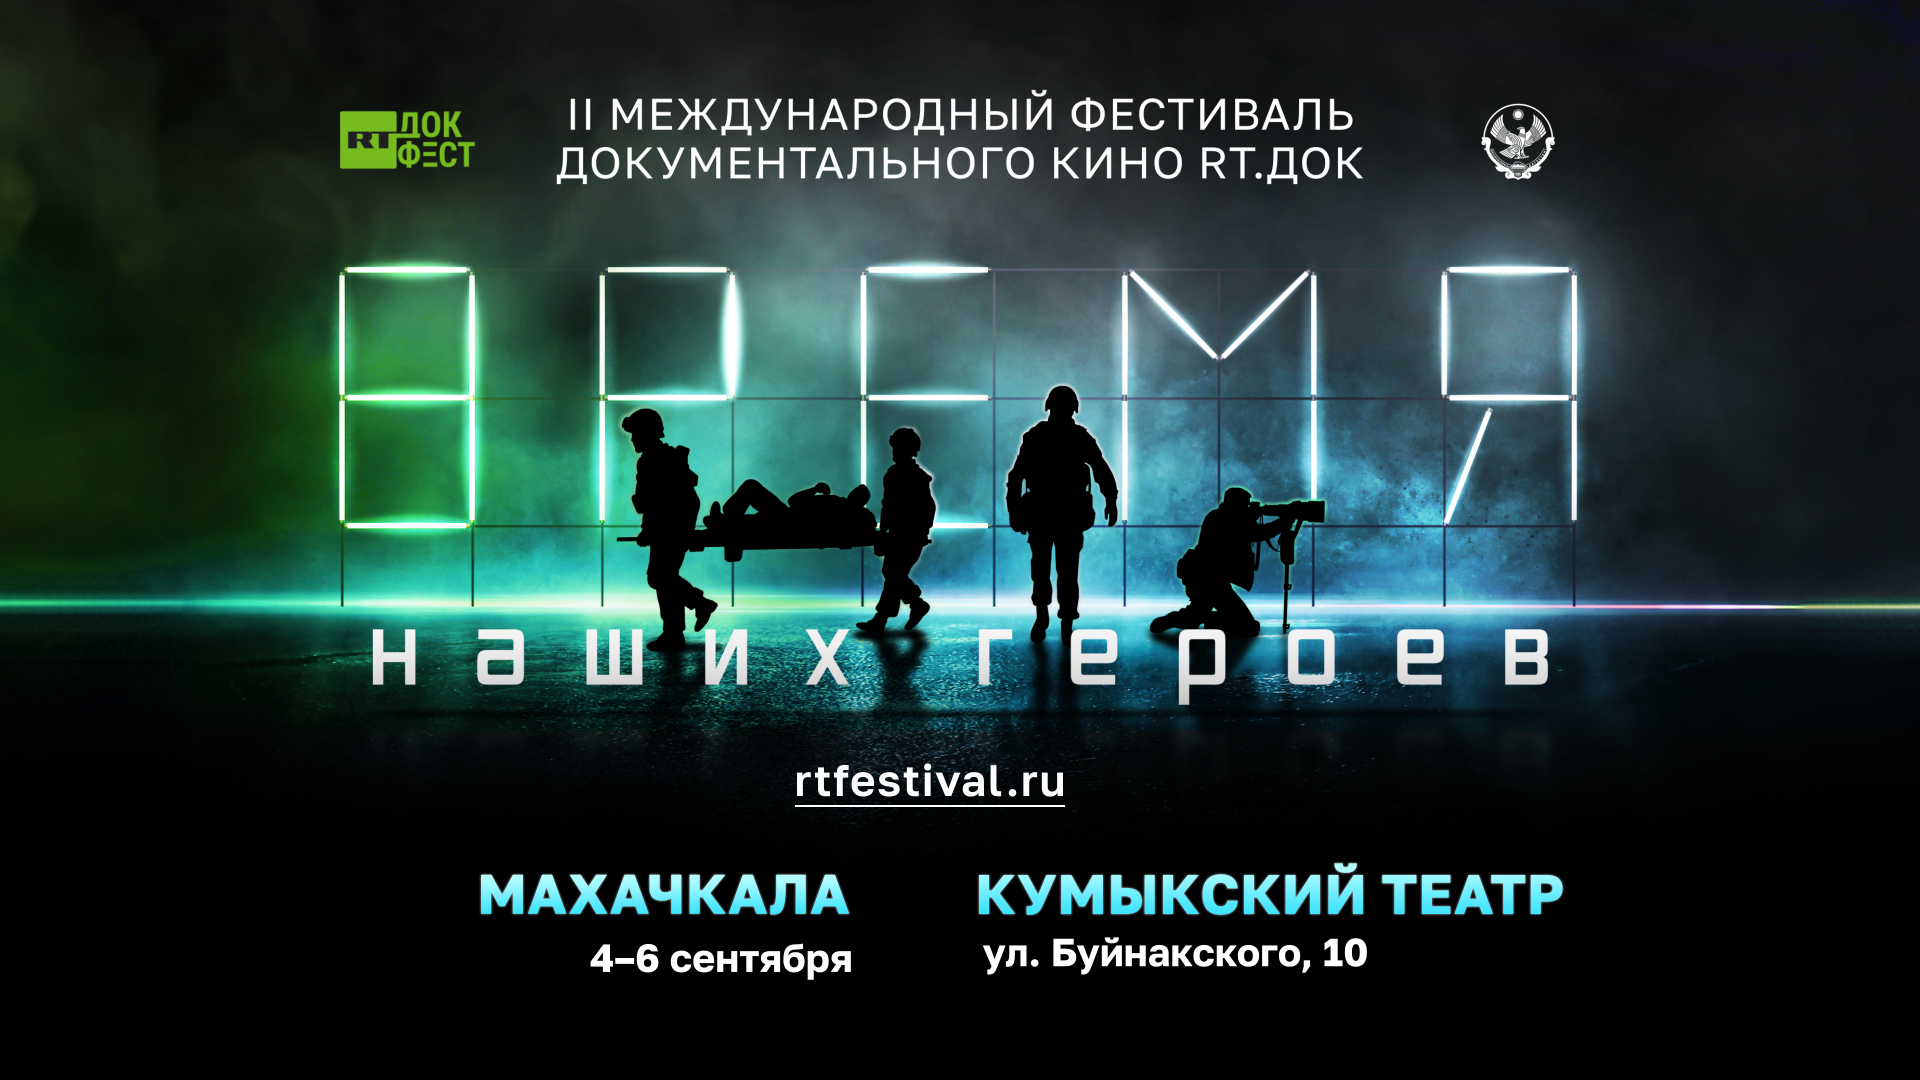 В Дагестане состоится фестиваль документального кино «RT.Док: Время наших героев»